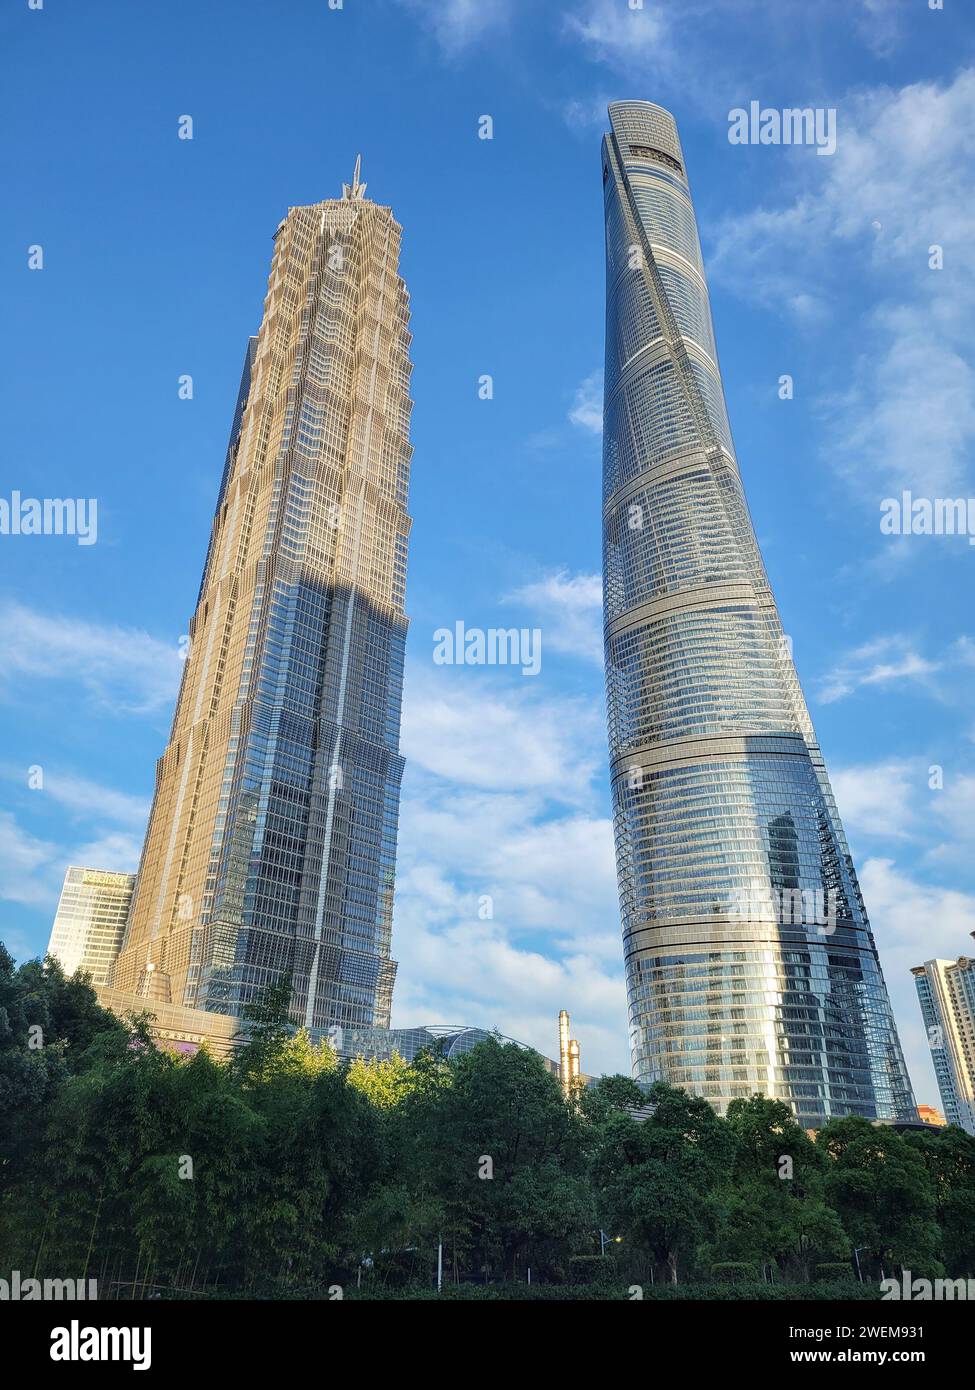 Shanghai Tower und Jin Mao Tower im modernen Geschäftsviertel Pudong in Shanghai, China Stockfoto